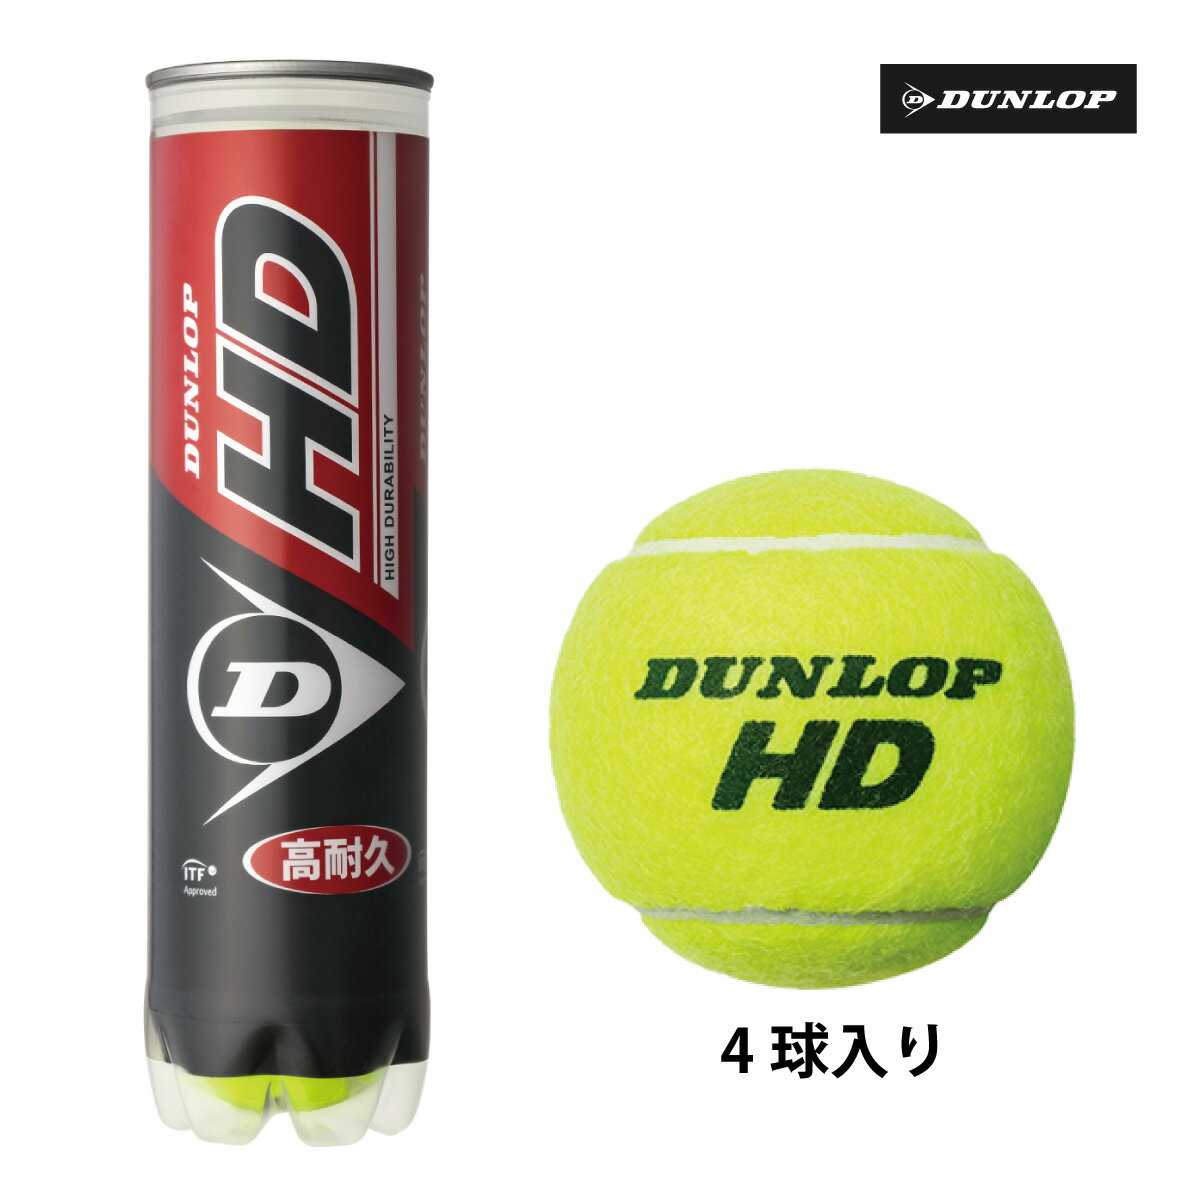 ダンロップ HD DUNLOP HD 4球ペット缶 硬式 テニスボール 練習球